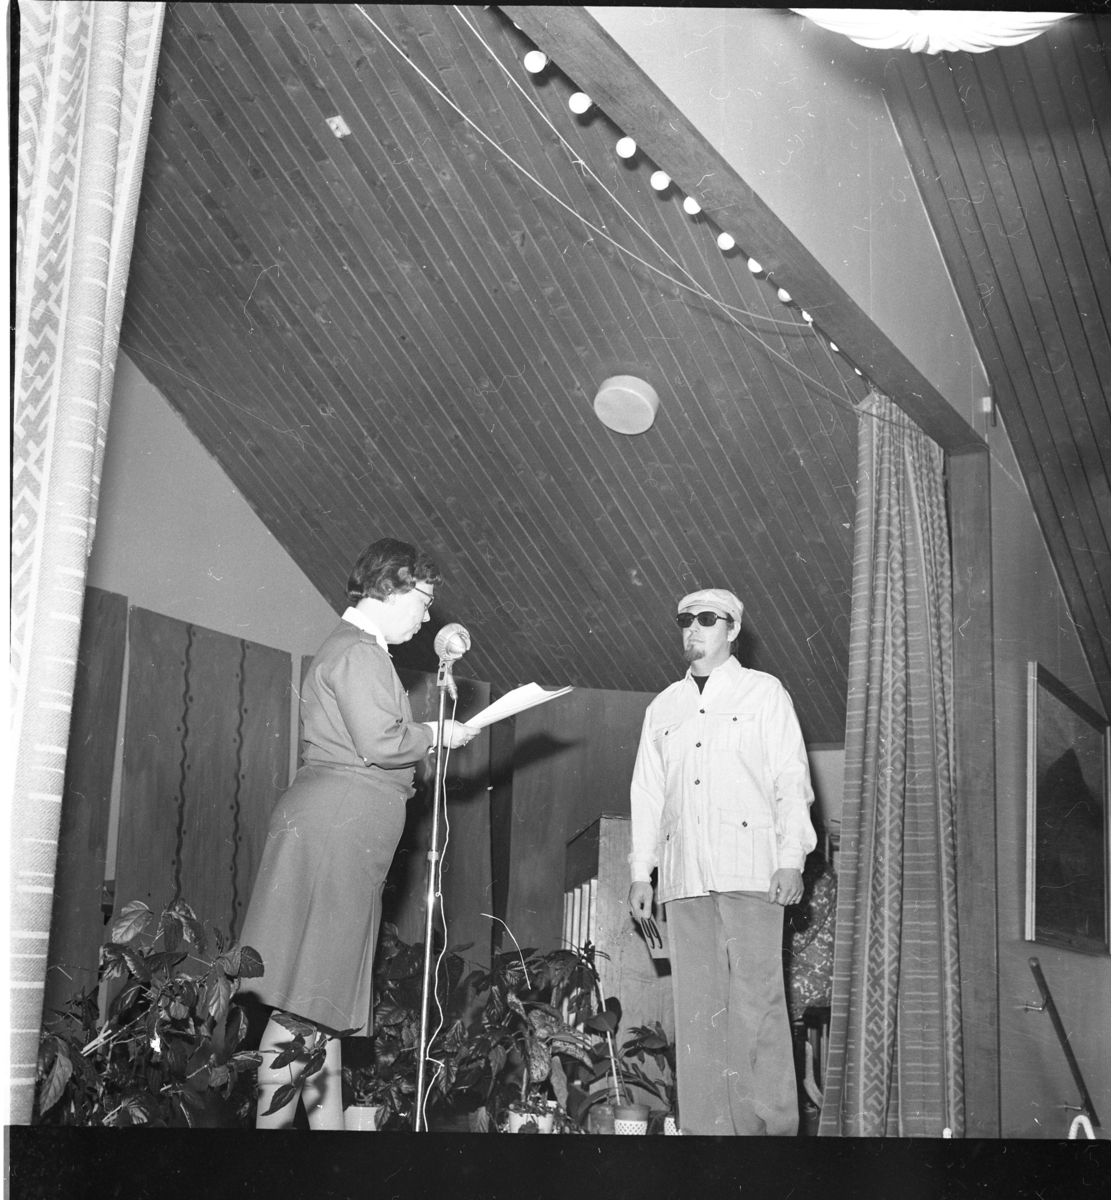 En kvinna och en man står på en scen, möjligen i samband med modevisning. Kvinnan står vid en mikrofon och läser i ett papper. Hon bär Lottakårens uniform.